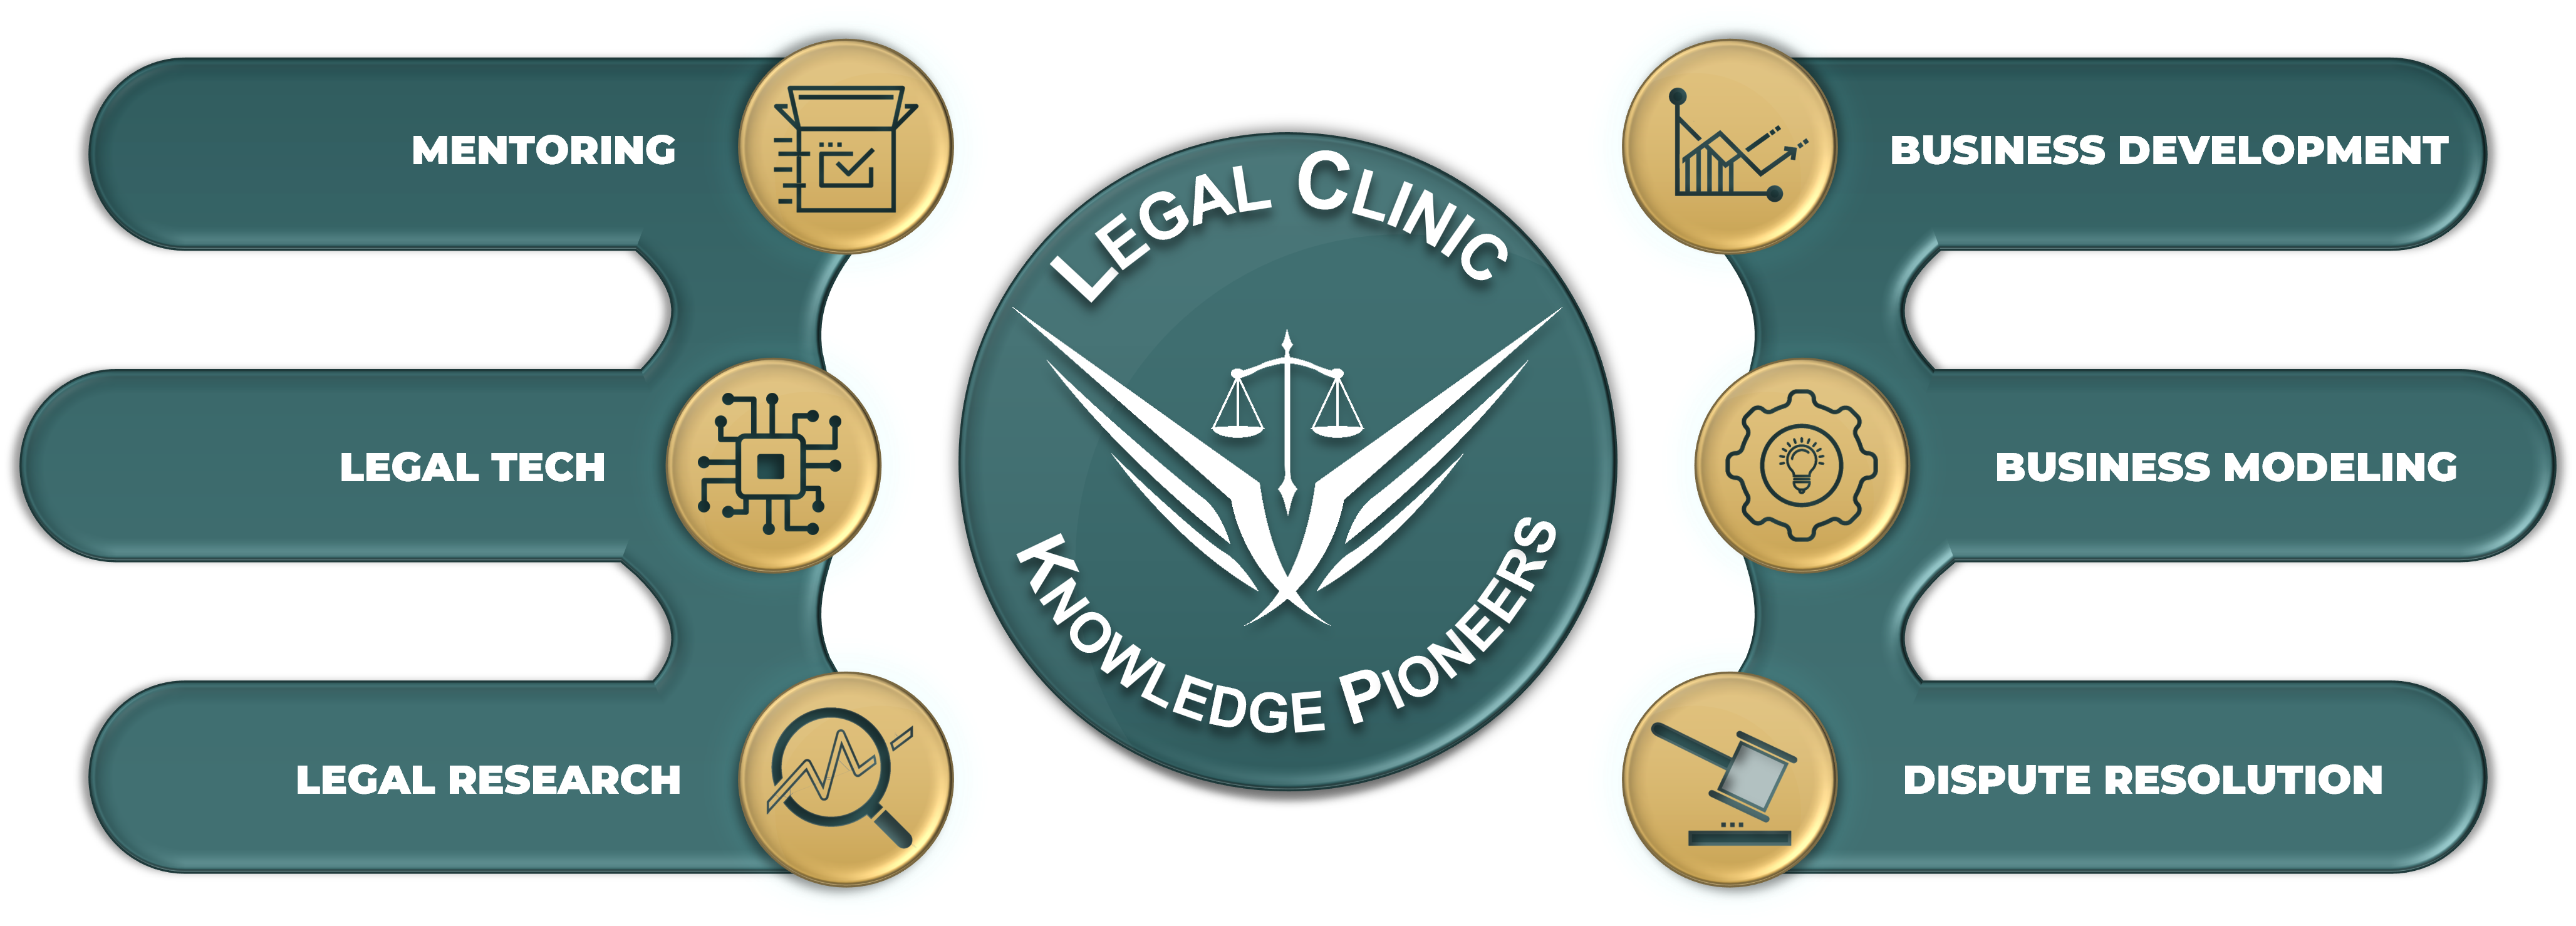 KP Legal Clinic design